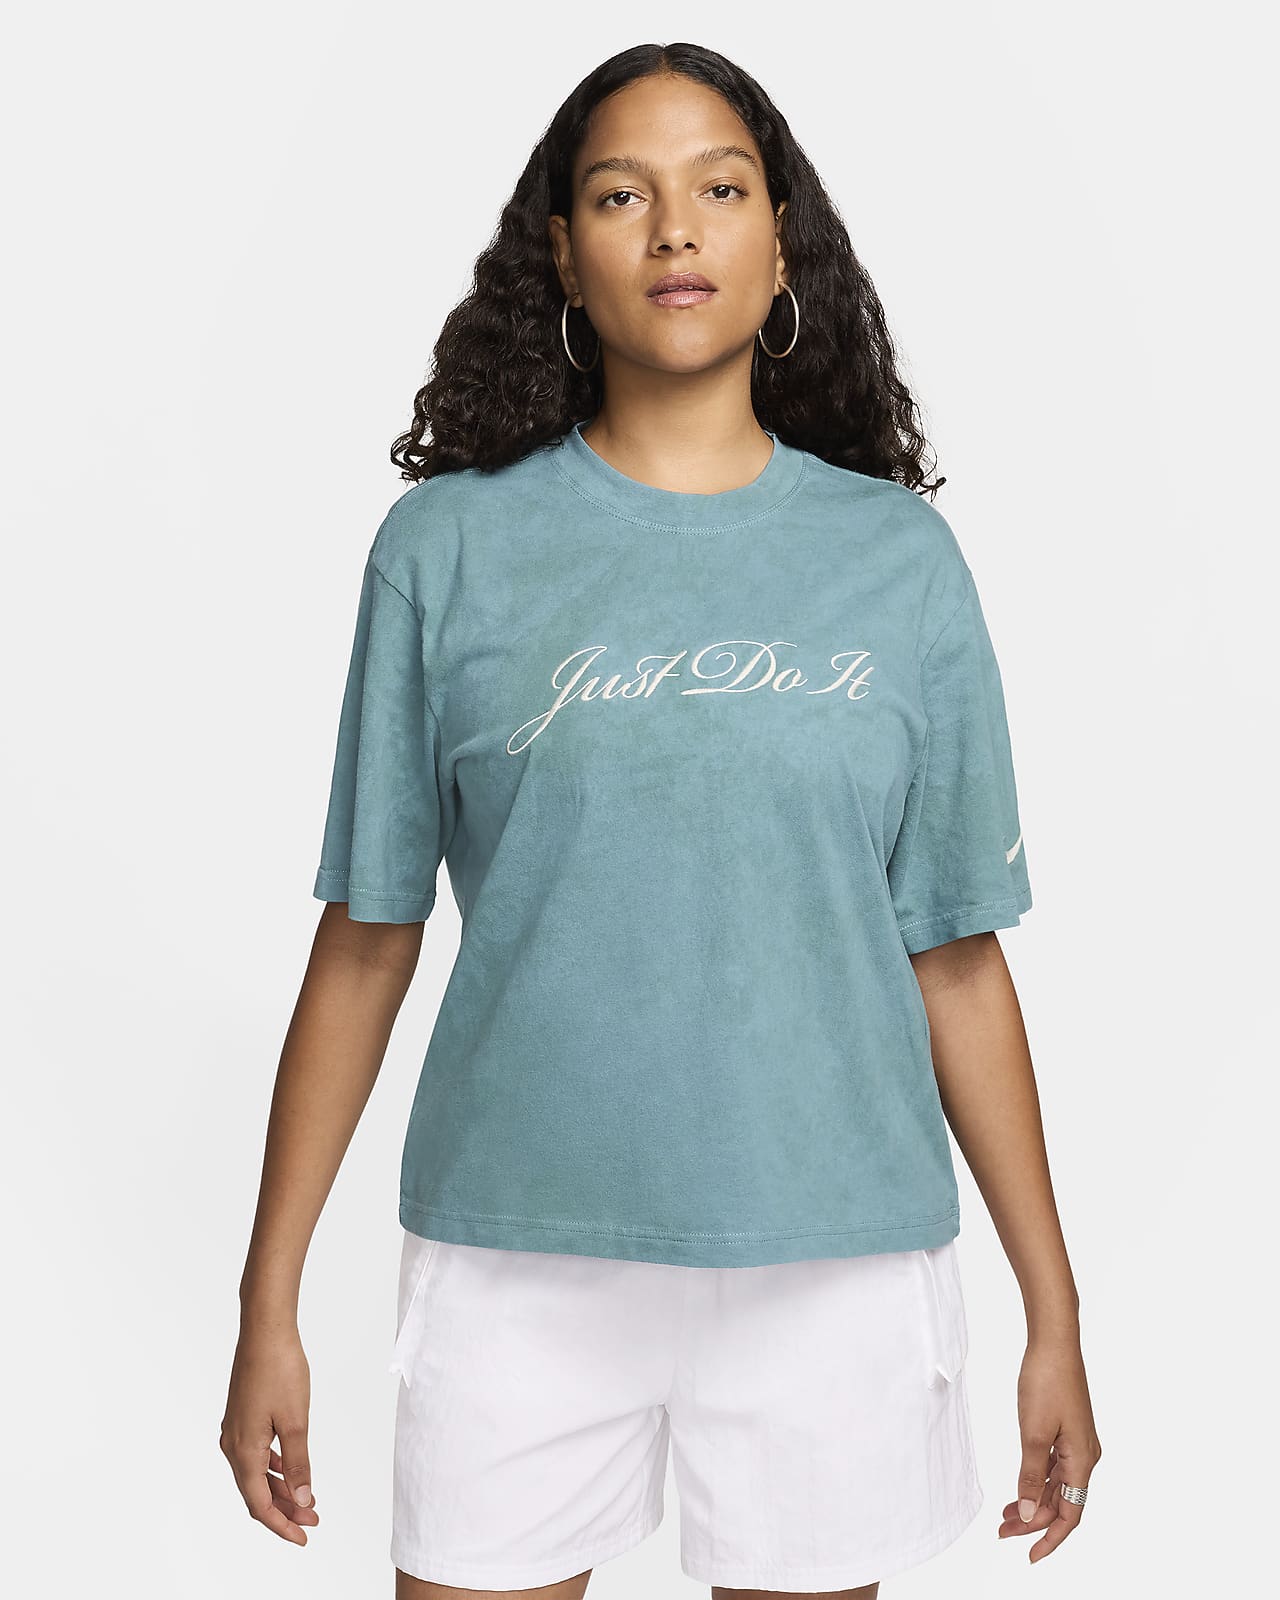 T-shirt Nike Sportswear – Donna